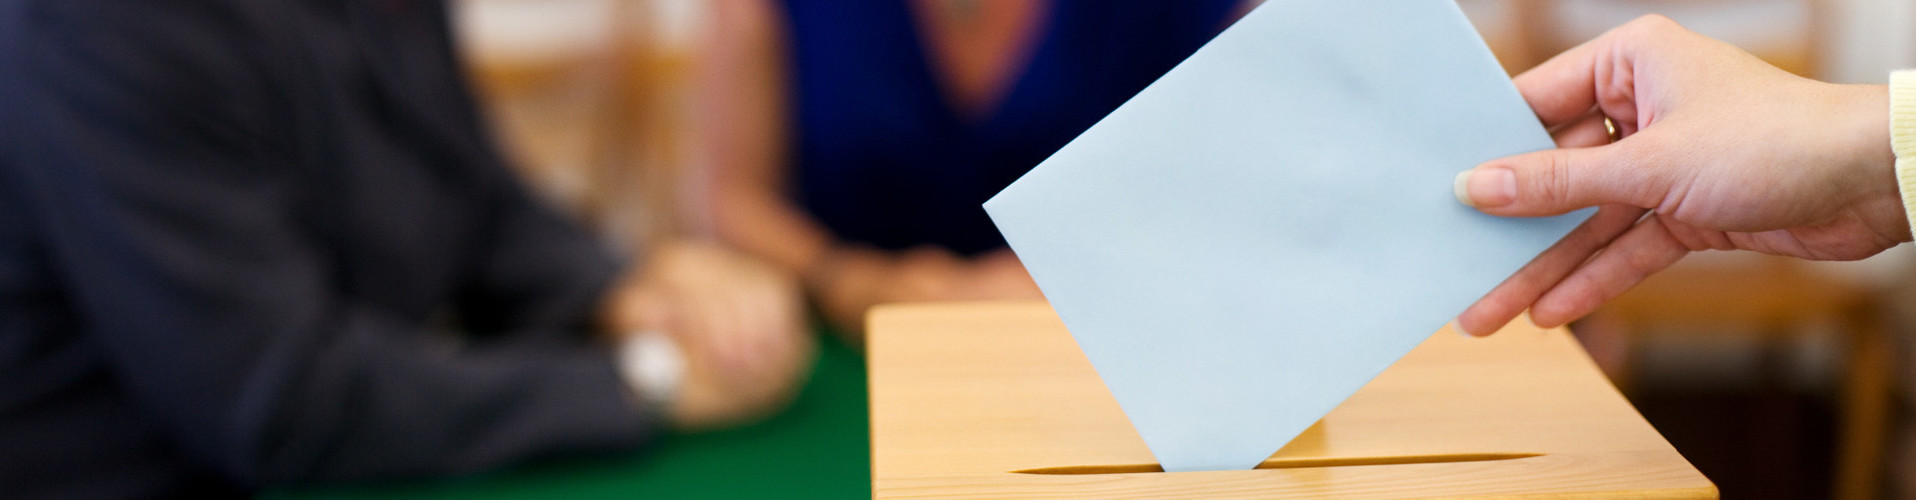 Vor unscharfem Hintergrund sieht man die Hand einer Frau, die ein Kurvert in eine Wahlurne steckt. © Gina Sanders, stock.adobe.com